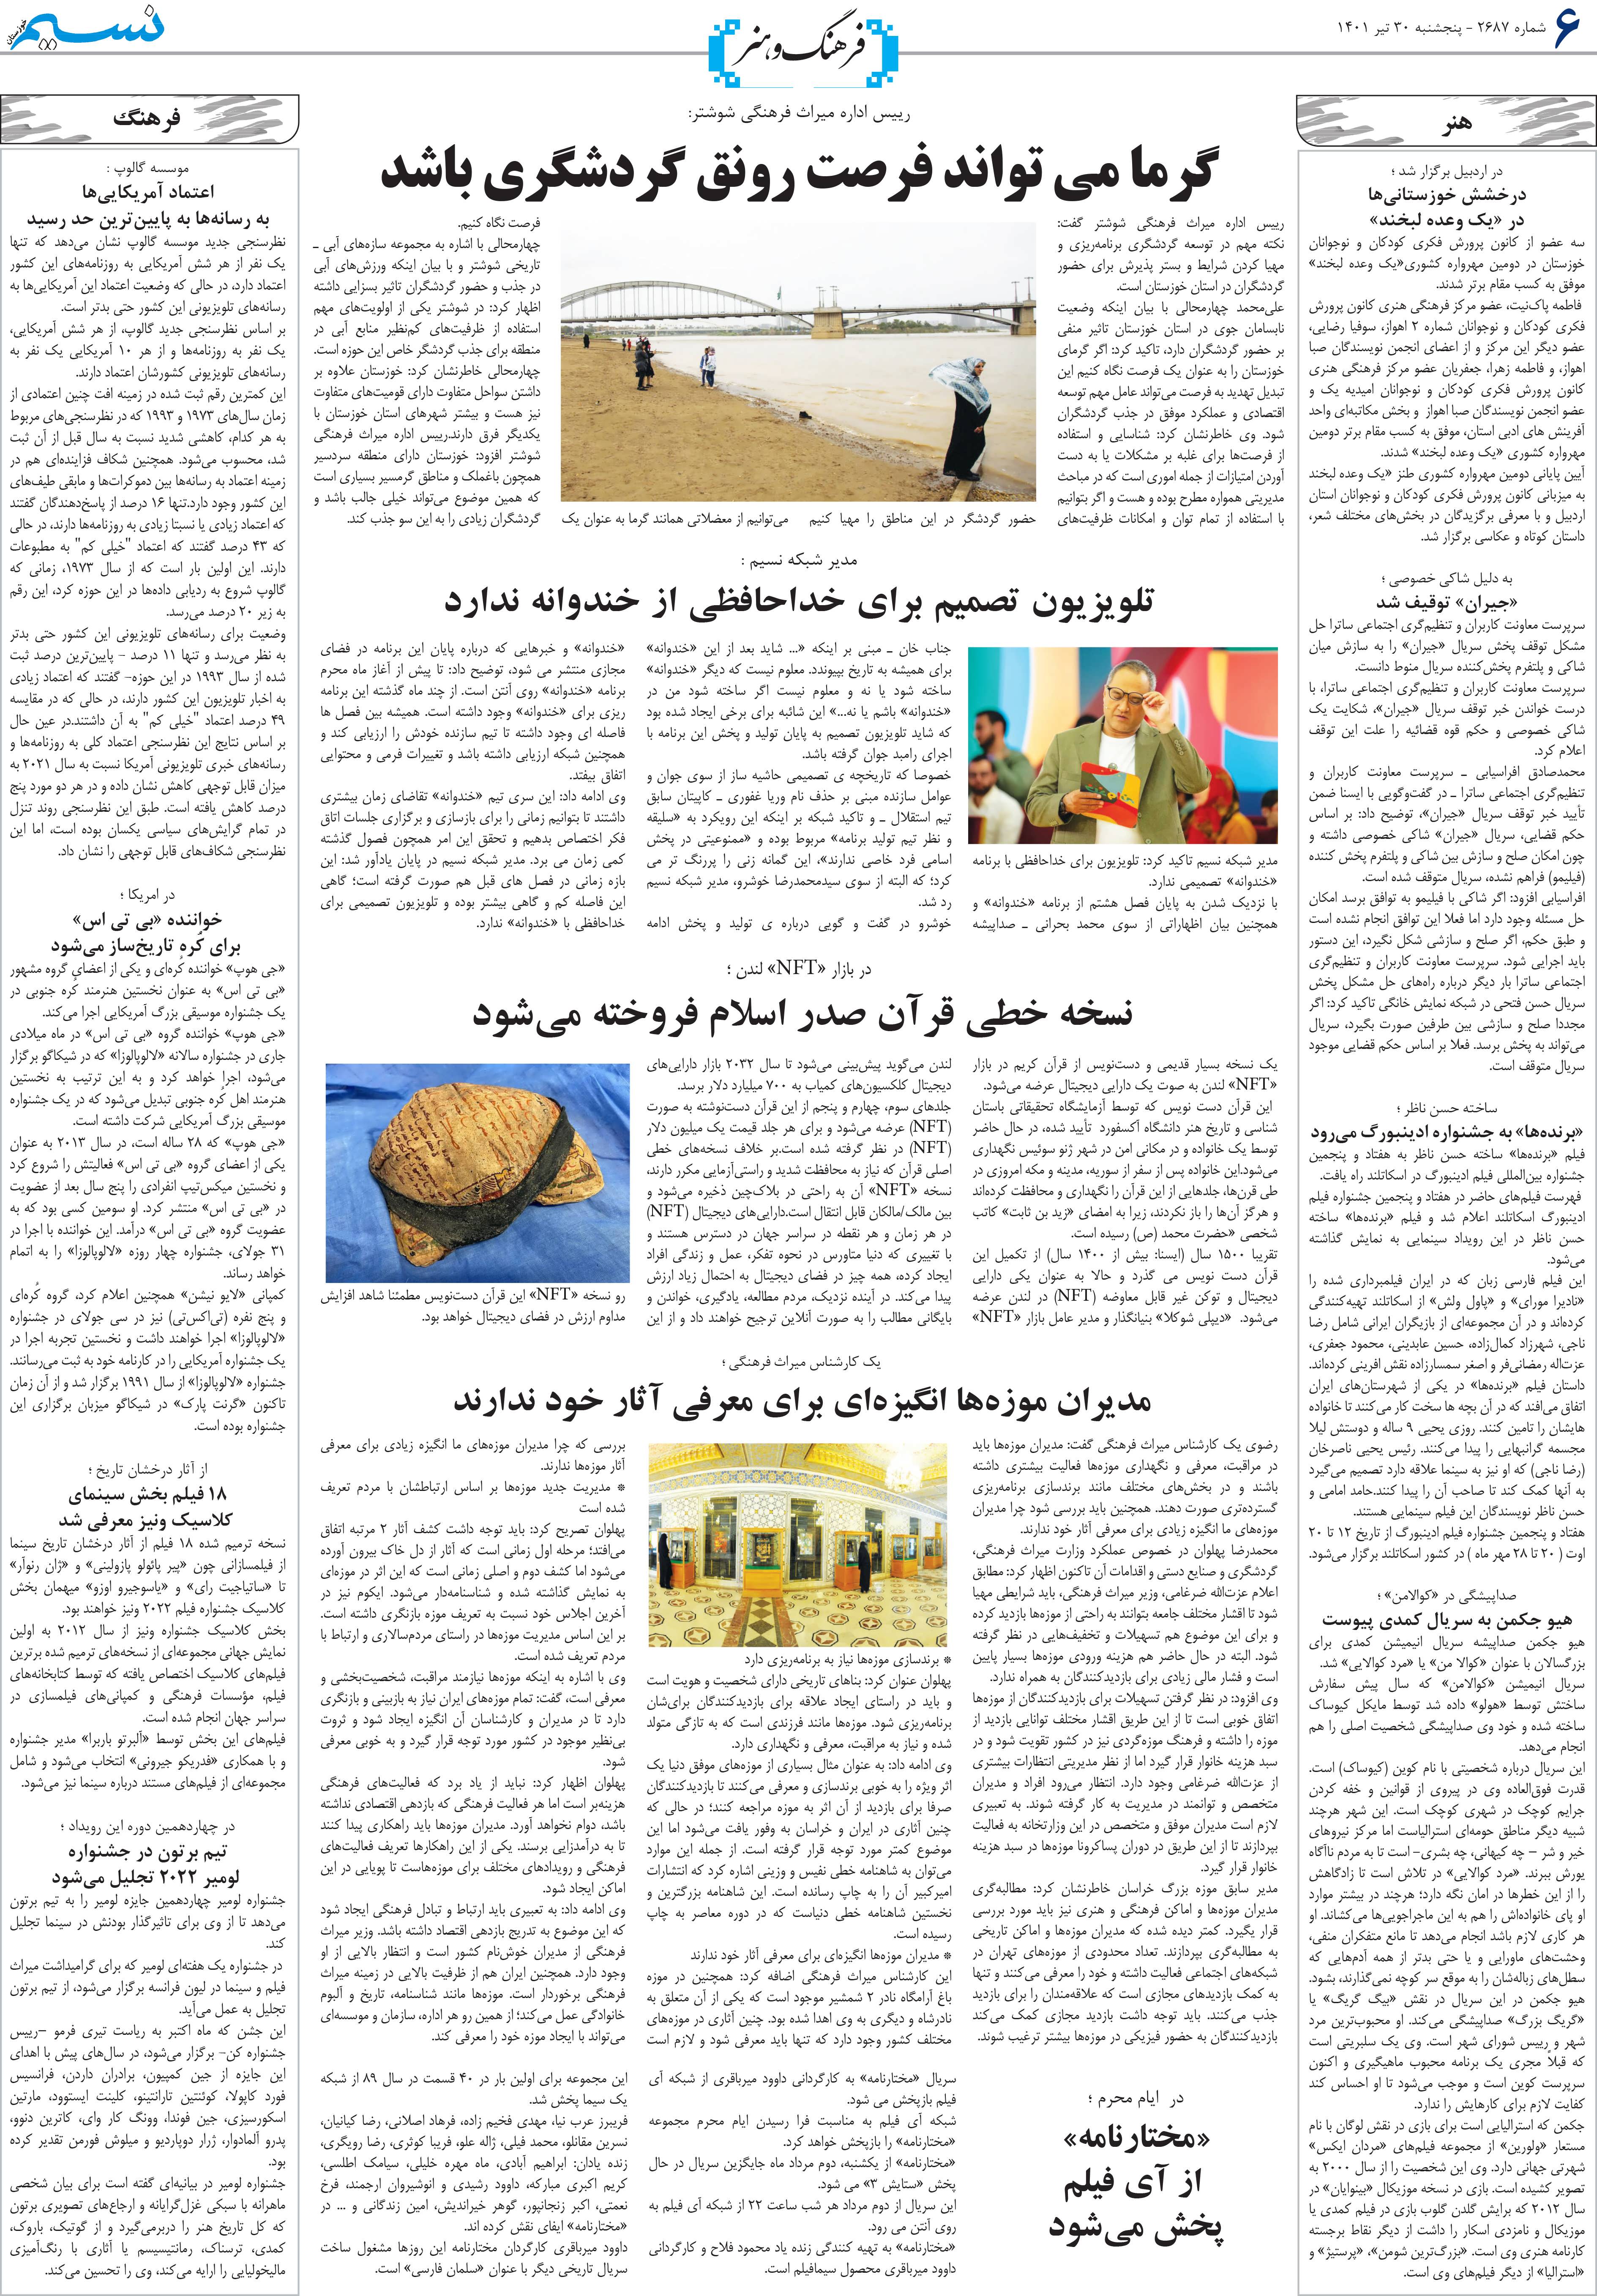 صفحه فرهنگ و هنر روزنامه نسیم شماره 2687